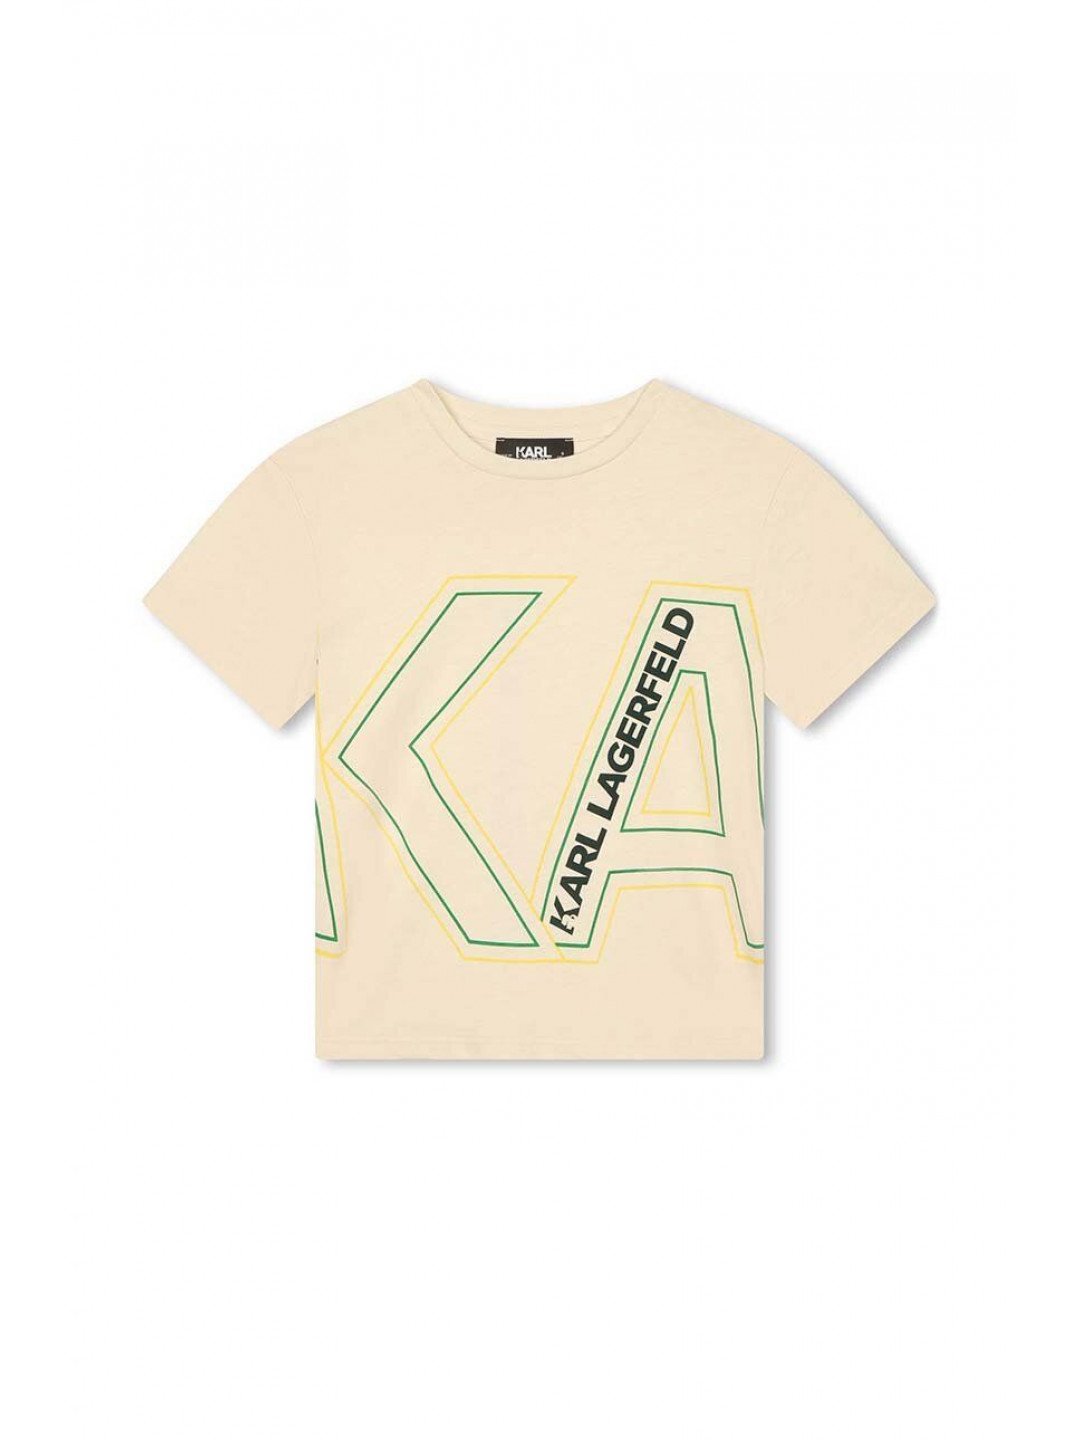 Dětské bavlněné tričko Karl Lagerfeld béžová barva s potiskem